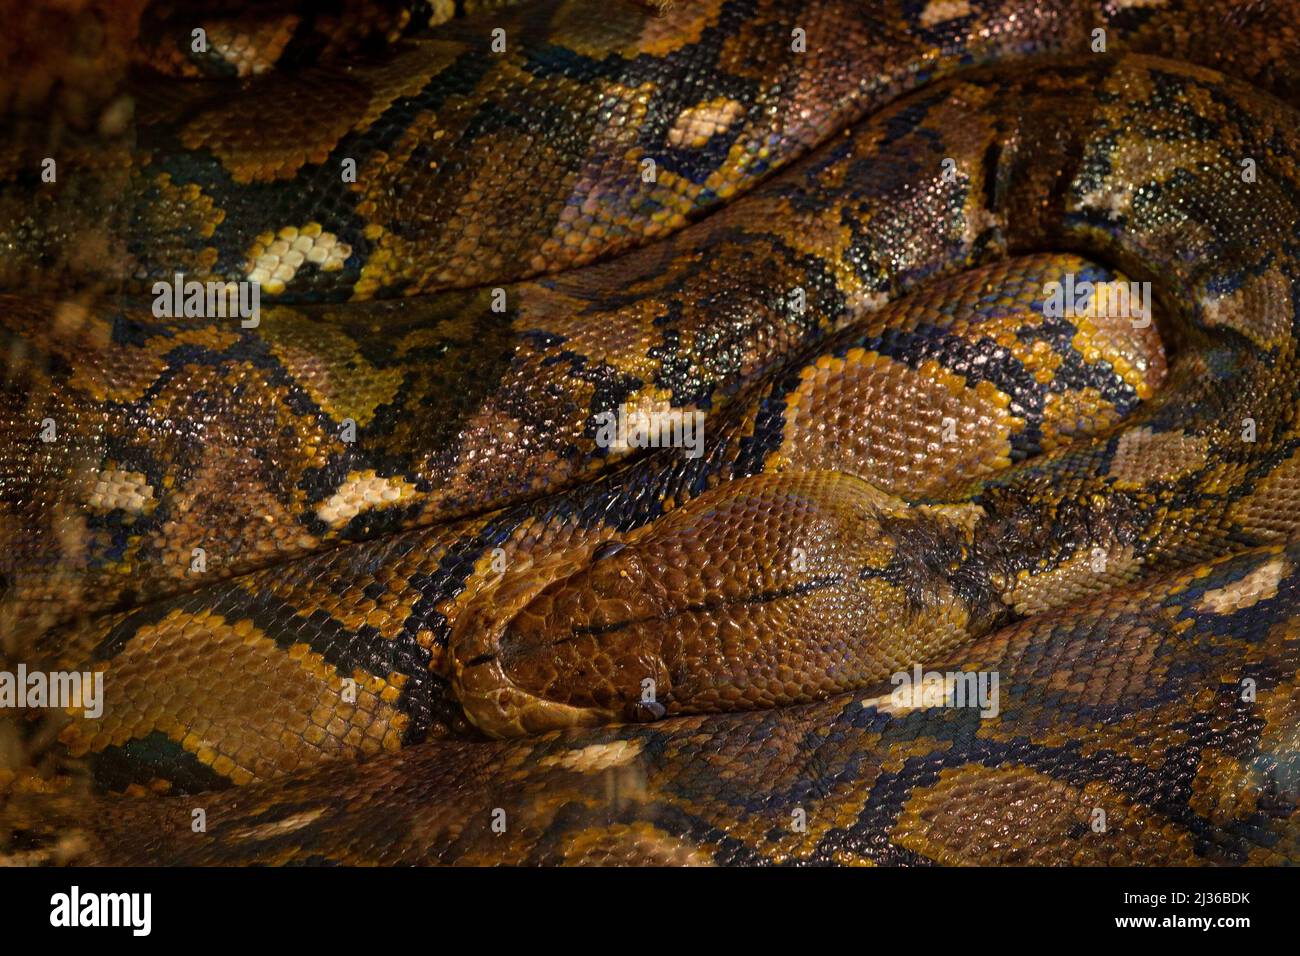 Netzpython, Python reticulatus, Südostasien. Die längsten Schlangen der Welt, Blick auf die Natur. Python im Naturlebensraum, Indien, Thailand. Schlange f Stockfoto